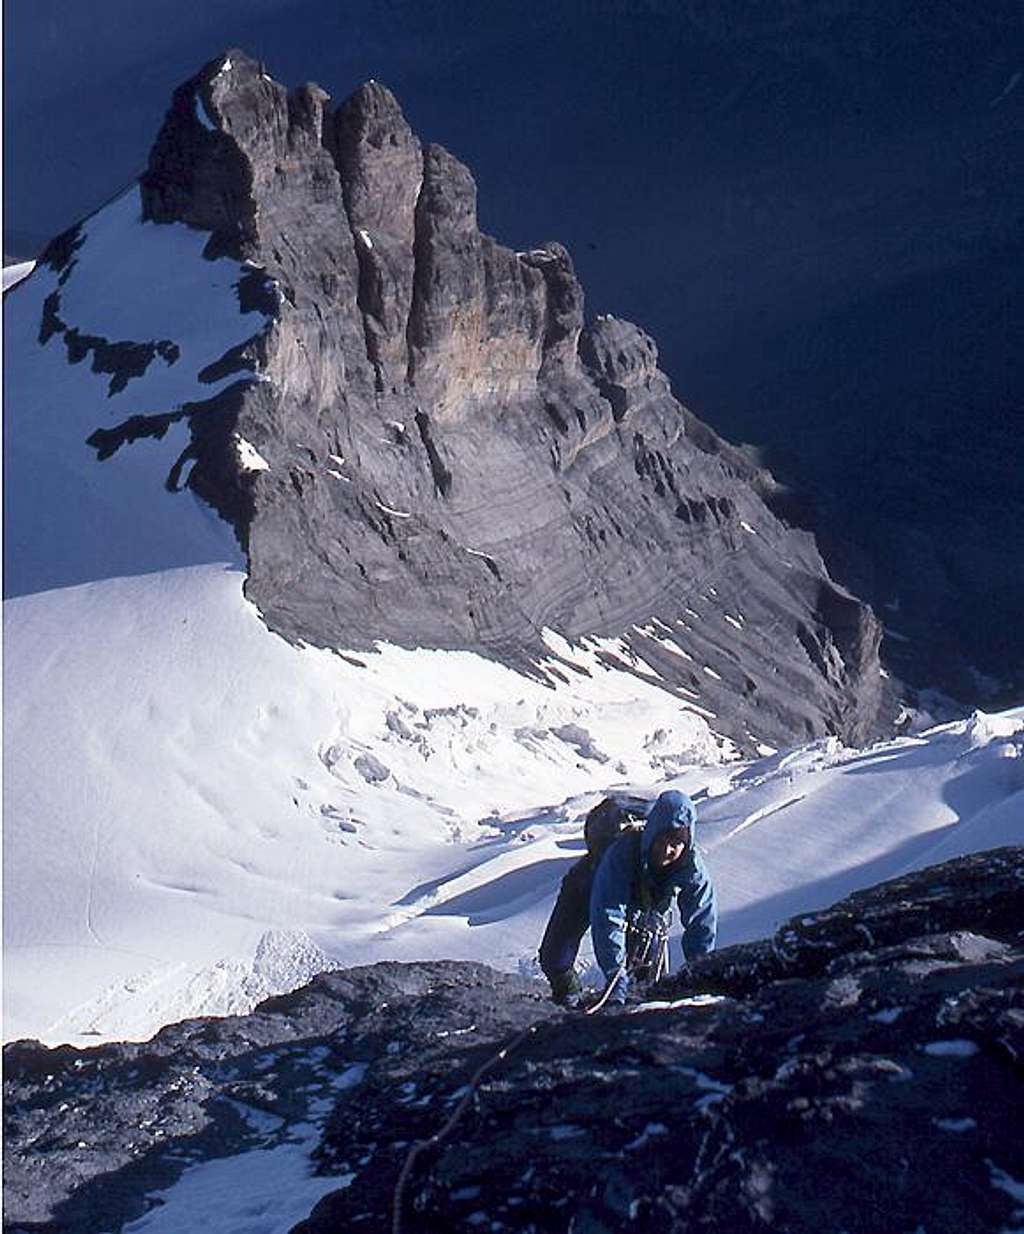 Weisse Frau, last rocks before the summit